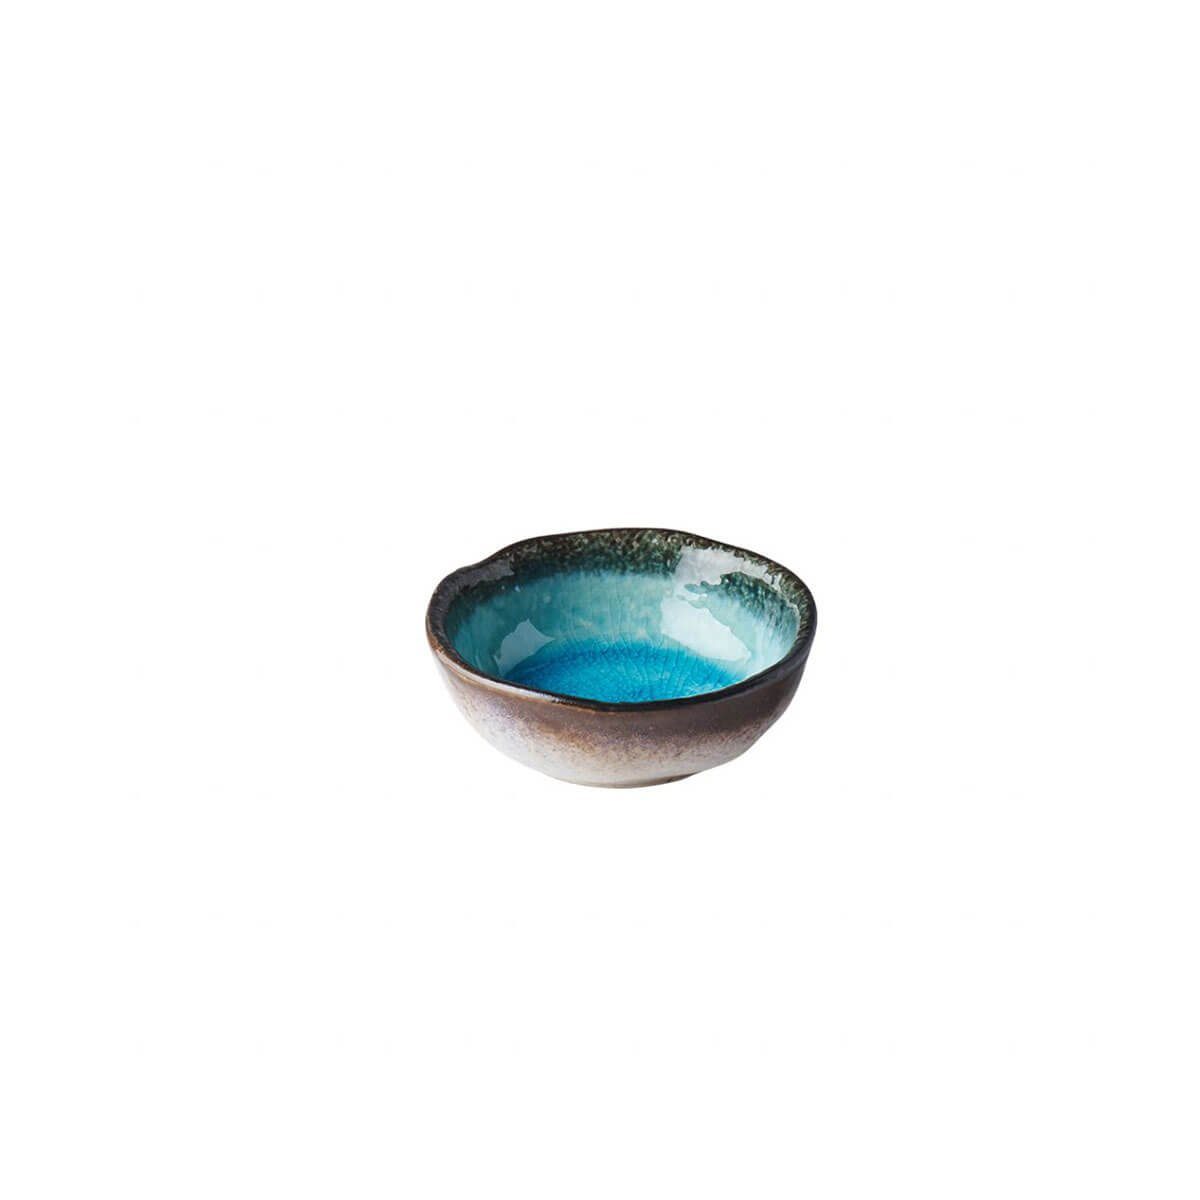 Made in blue MIJ ml, sky Keramik Made 50 Servierschüssel Japan - in Japan Bowl